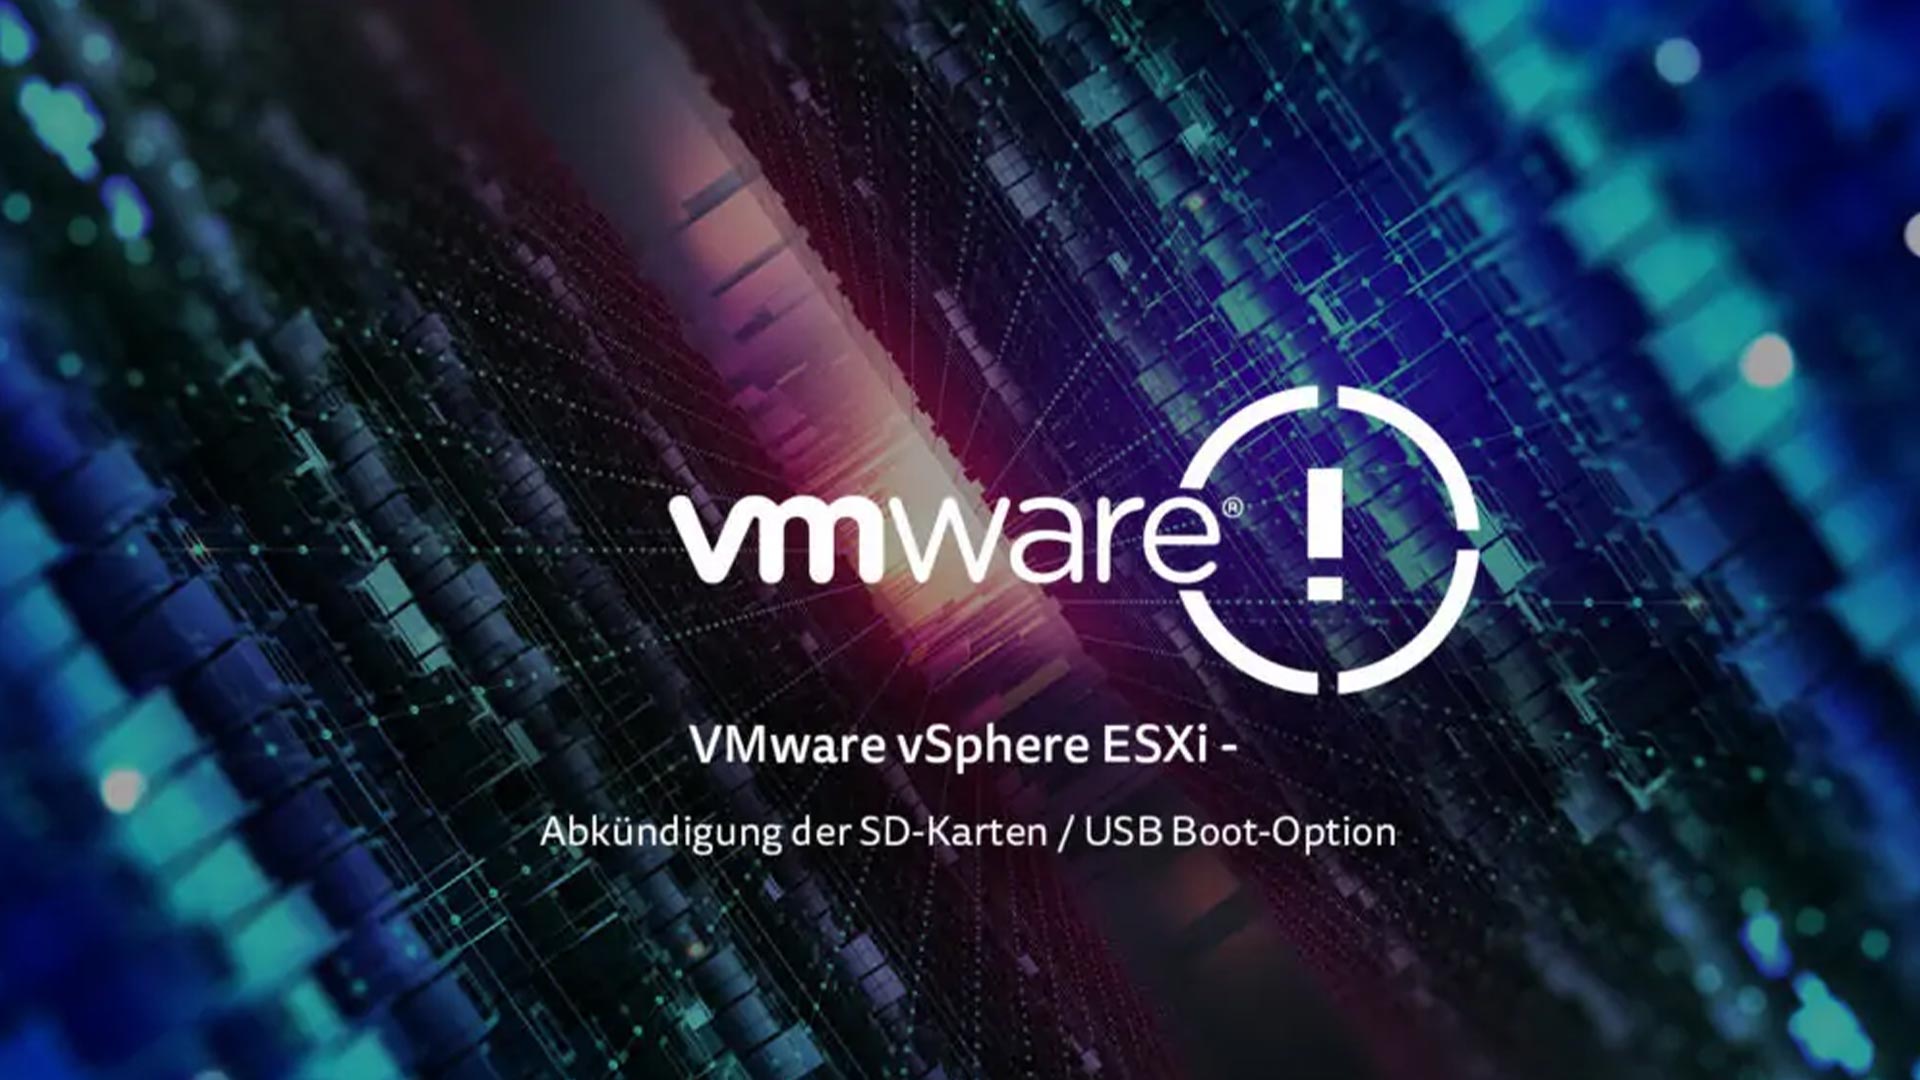 VMware vSphere ESXi – Abkündigung der SD-Karten / USB Boot-Option